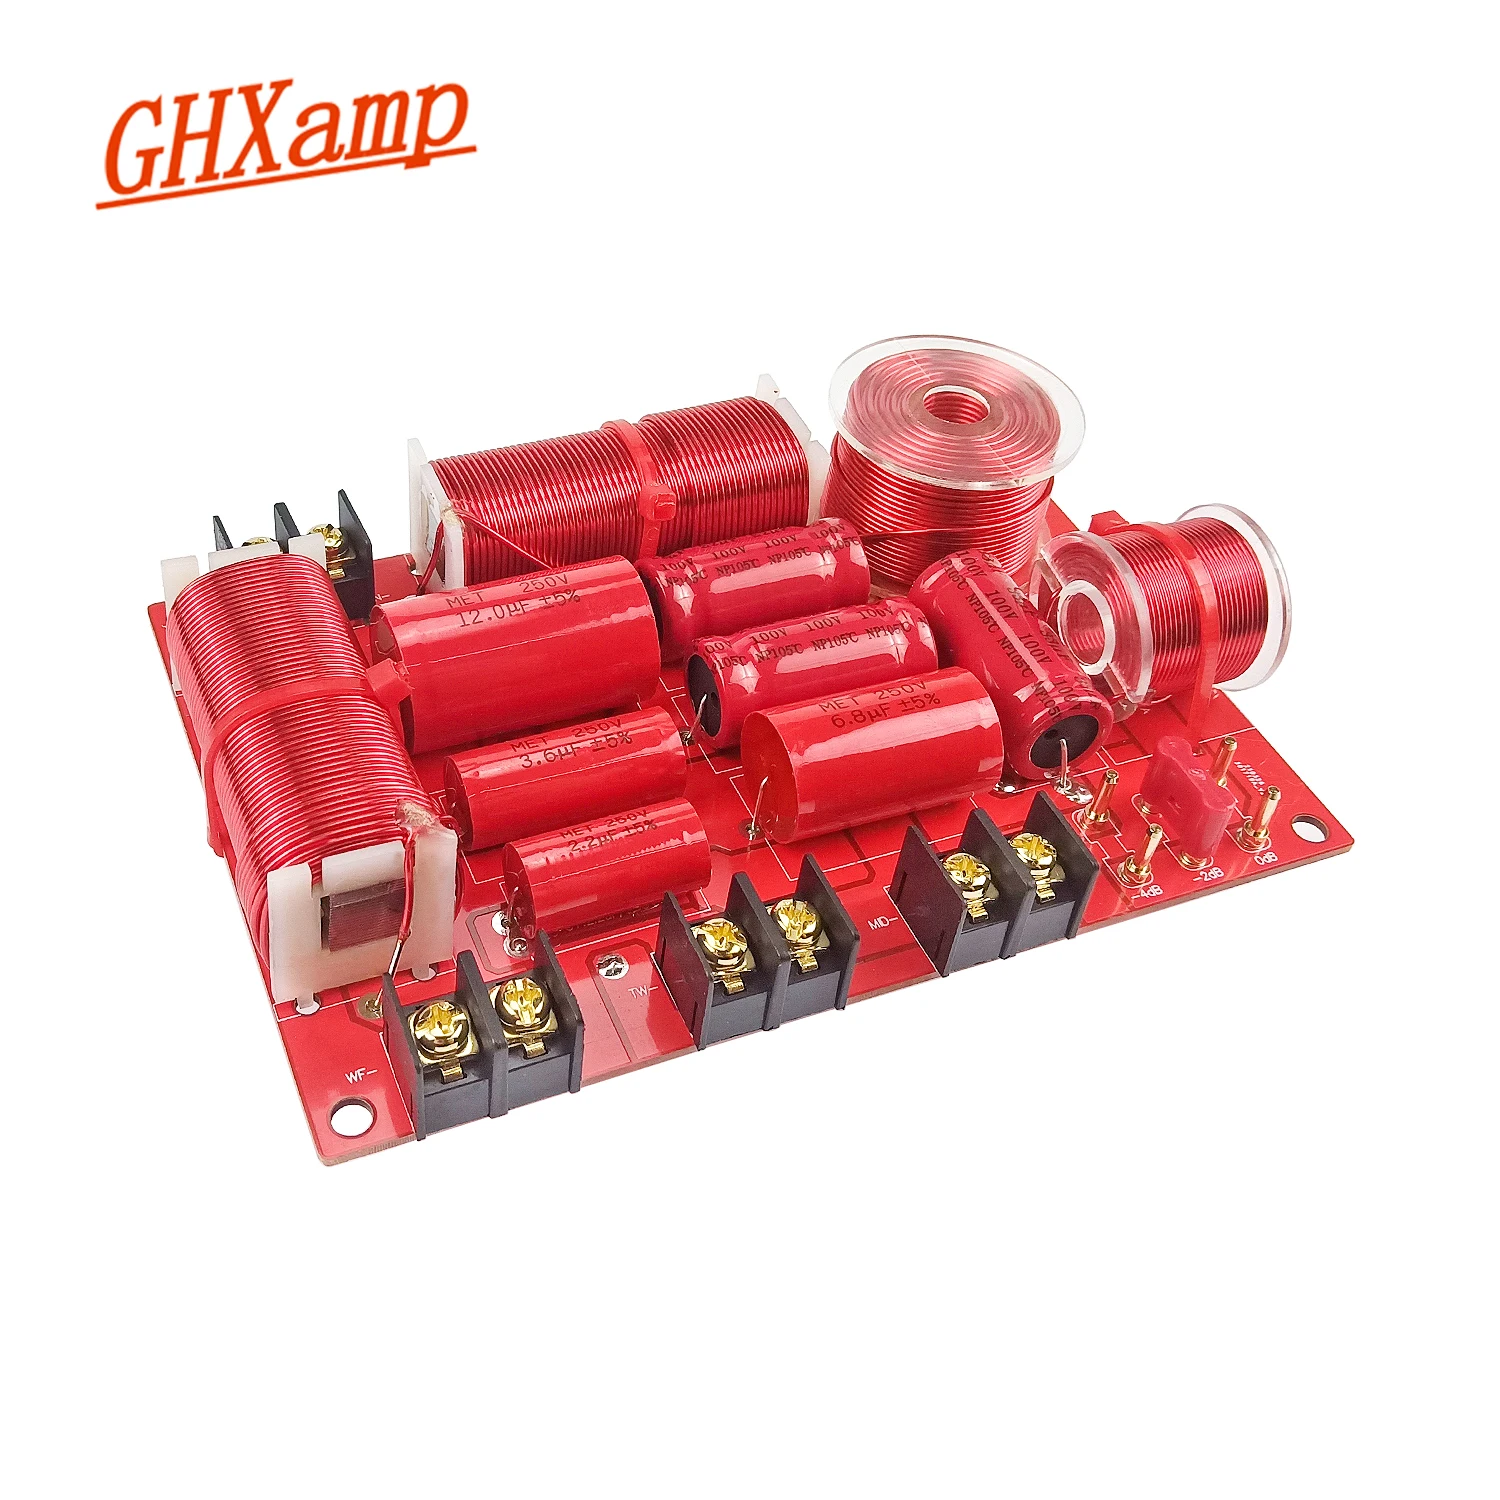 Делитель частоты GHXAMP 350 Вт 750 Гц 5 кГц | Электроника